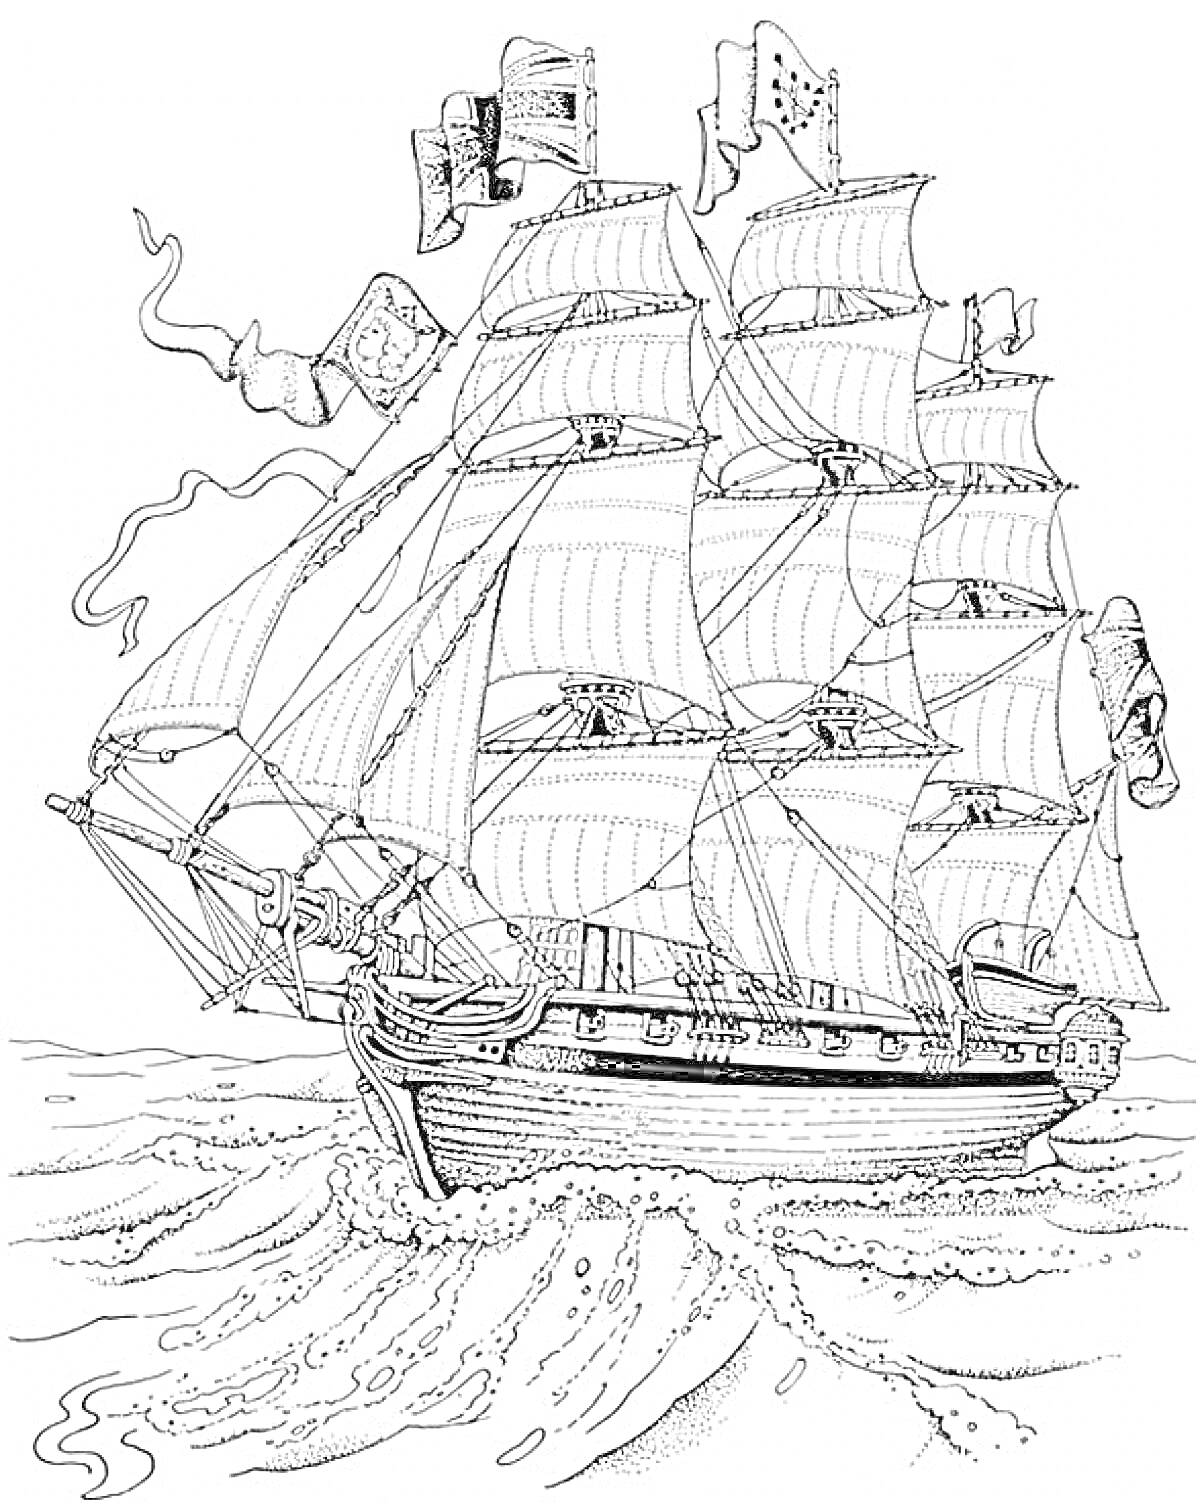 Парусный корабль на волнах с развевающимися флагами